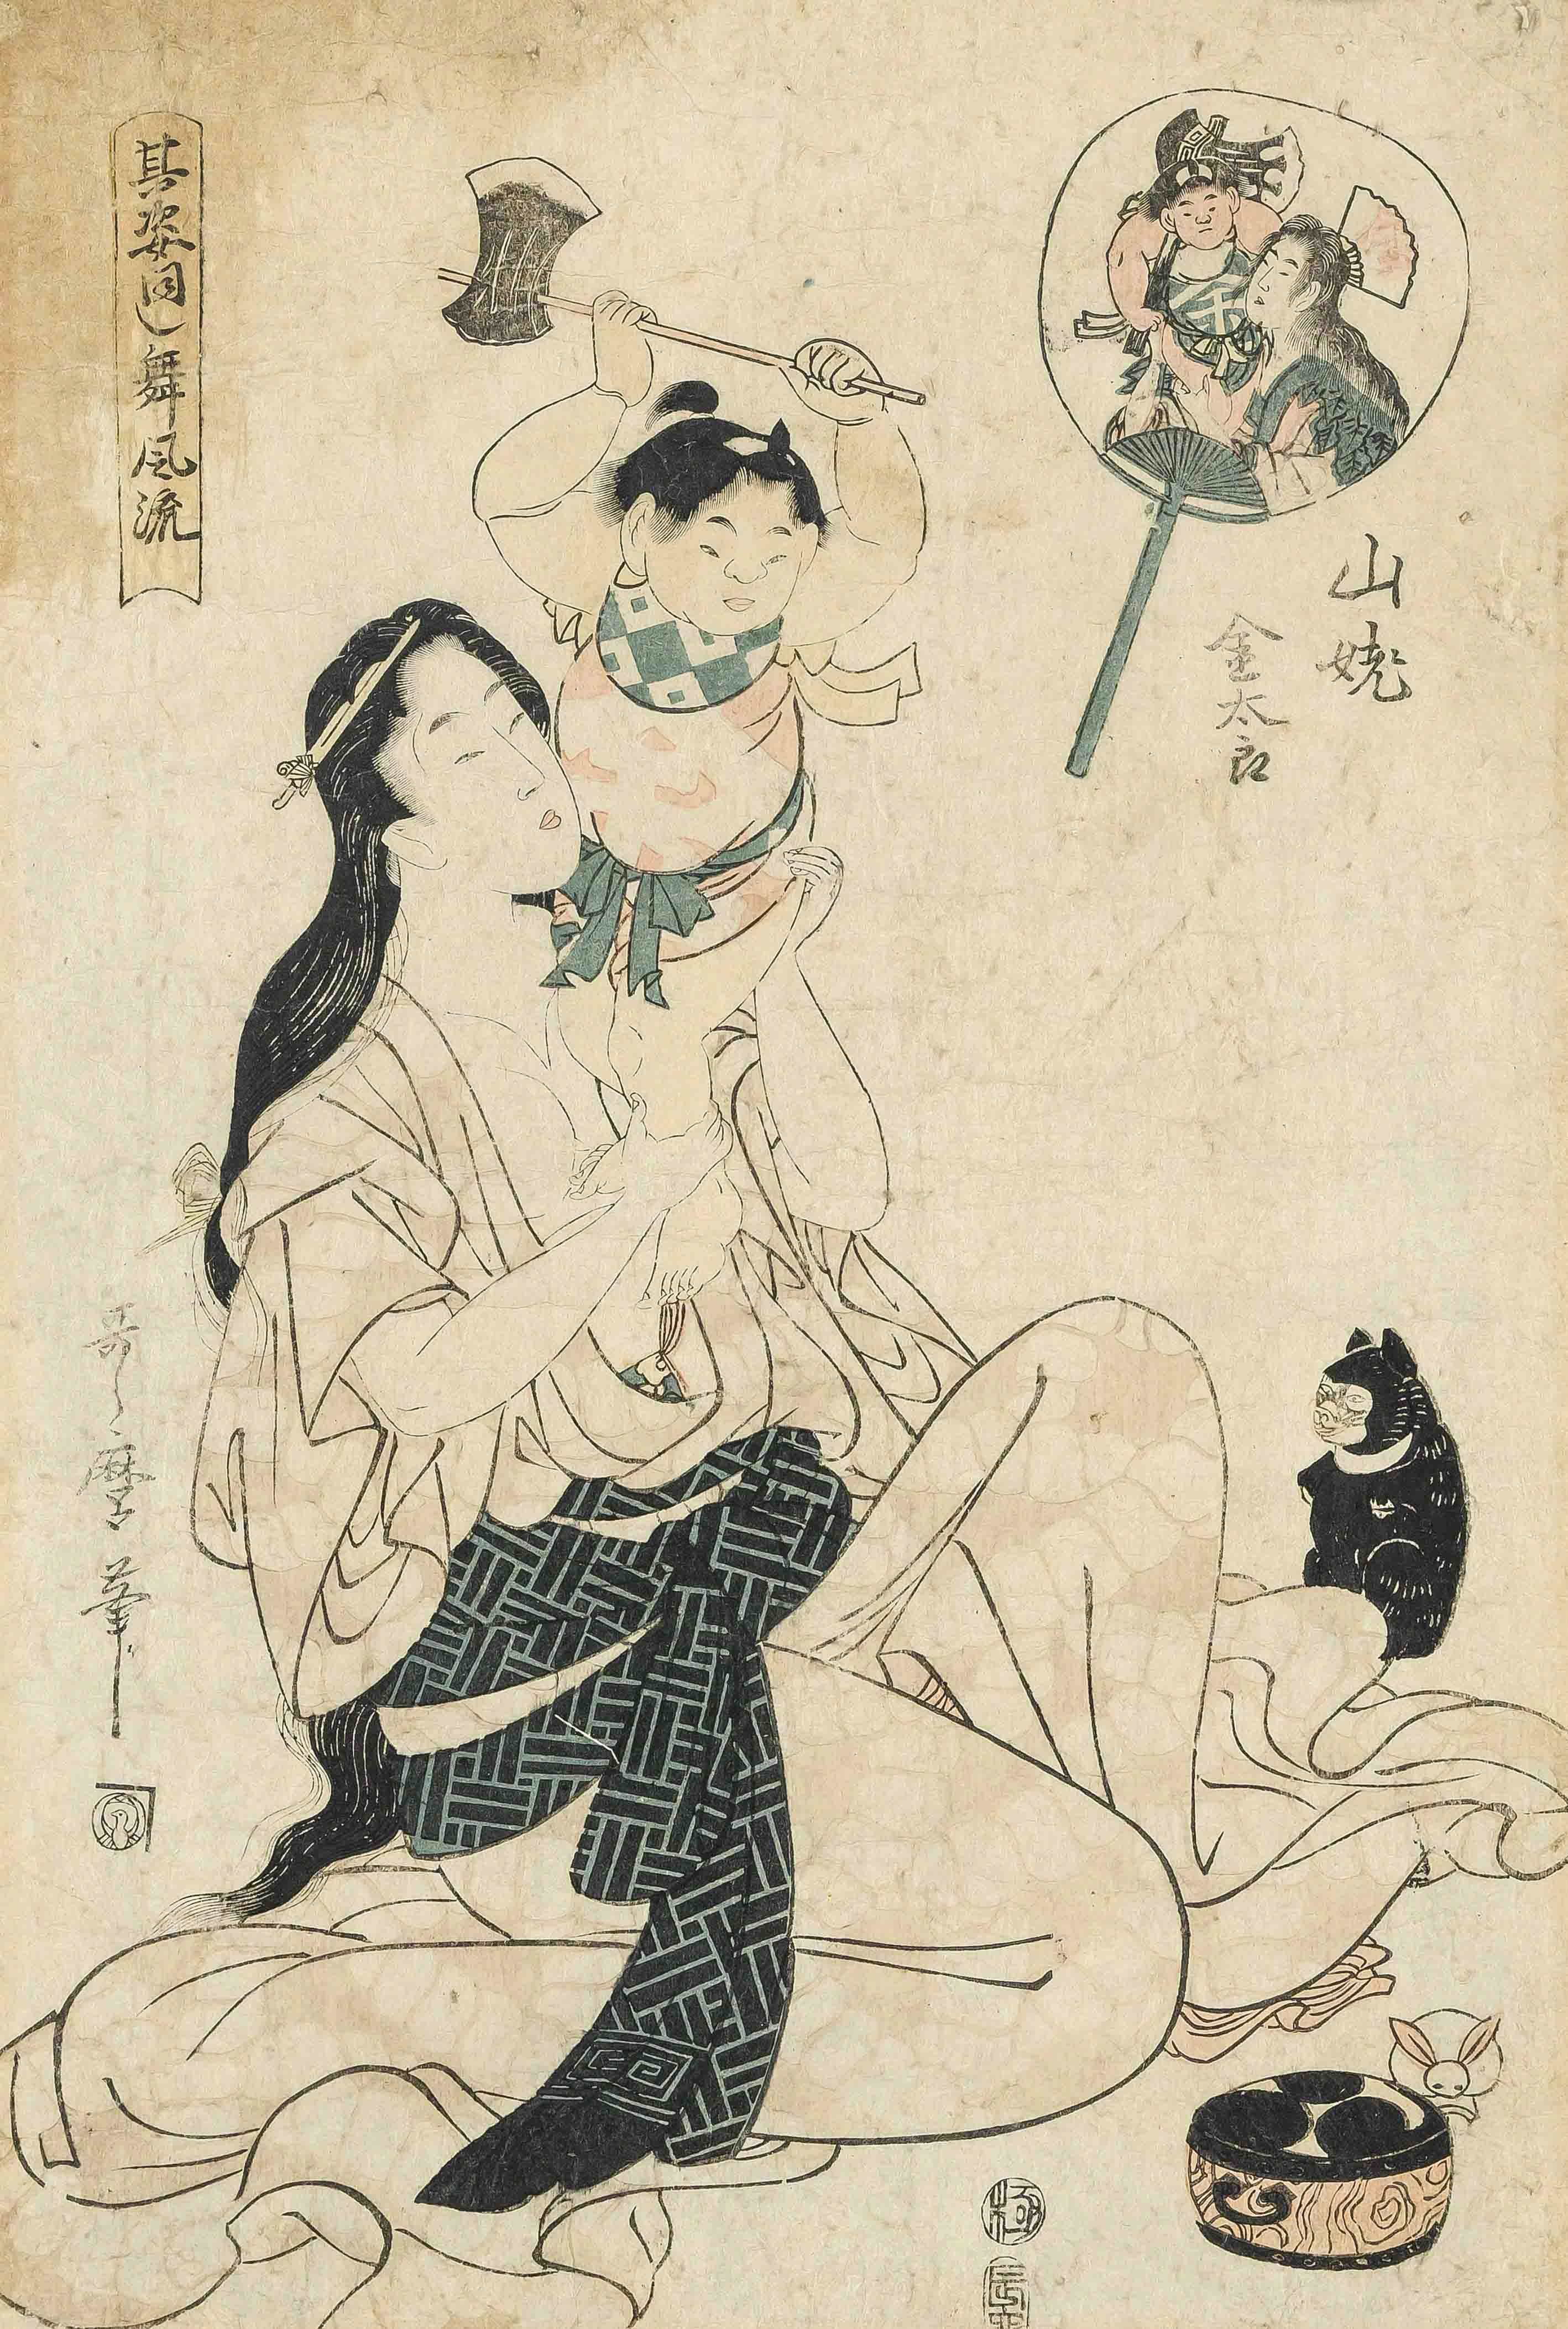 Kitagawa Utamaro woodblock print, Japan Edo period. Mother playing with her child. Oban format,